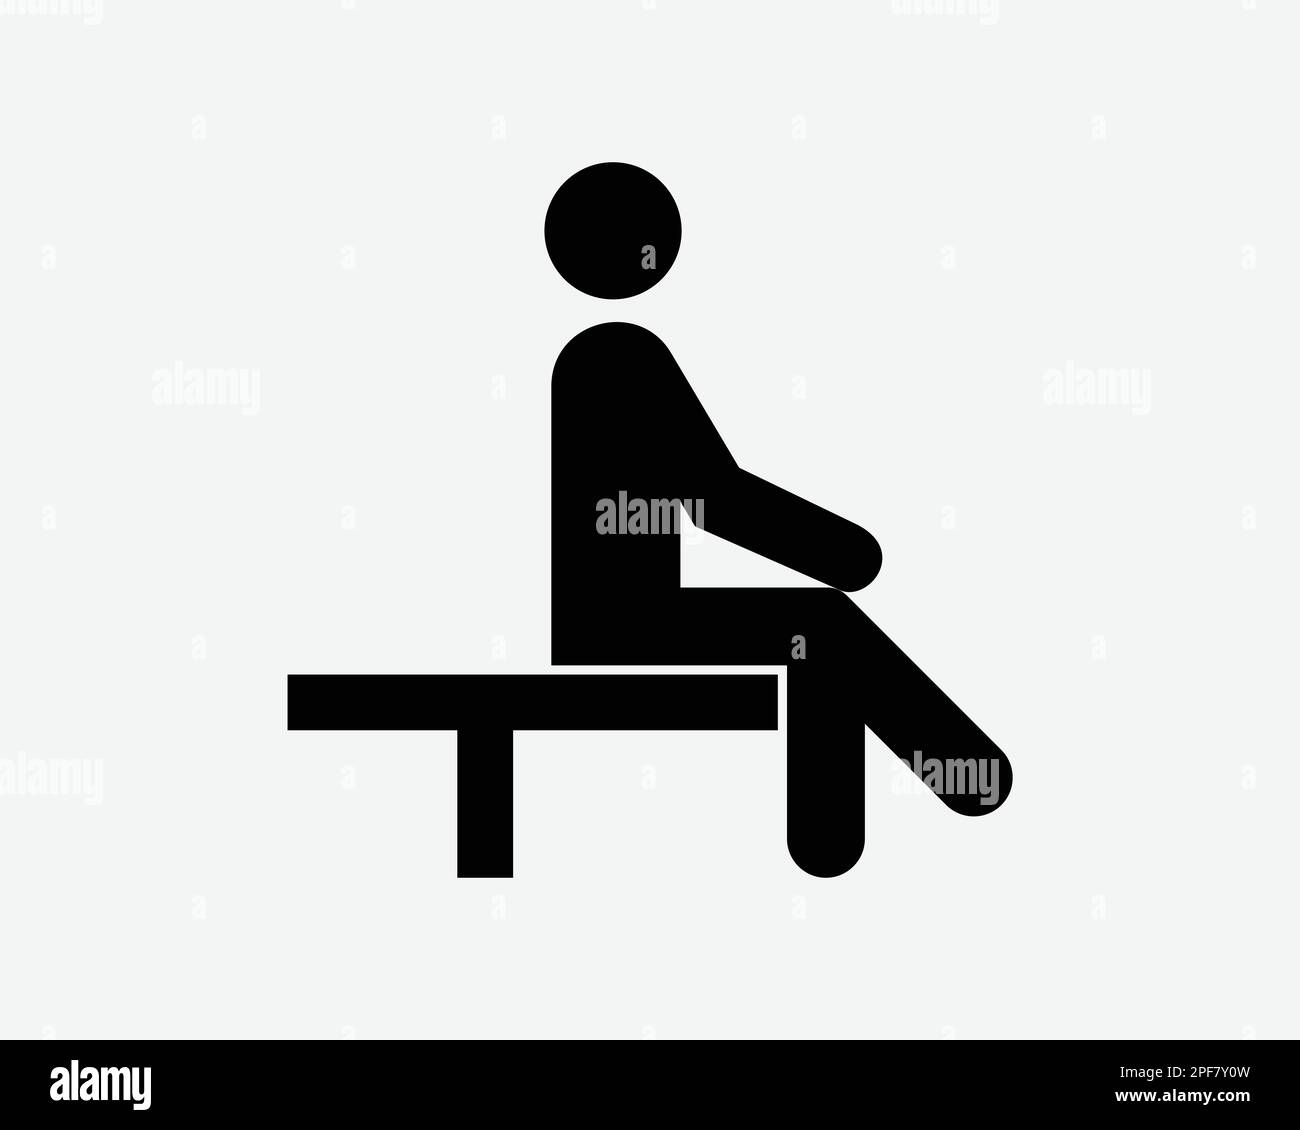 Uomo seduto seduta sedia da banco Cross gamba riposo pensare icona Bianco nero Silhouette simbolo segno grafico clipart Illustrazione pittogramma VEC Illustrazione Vettoriale